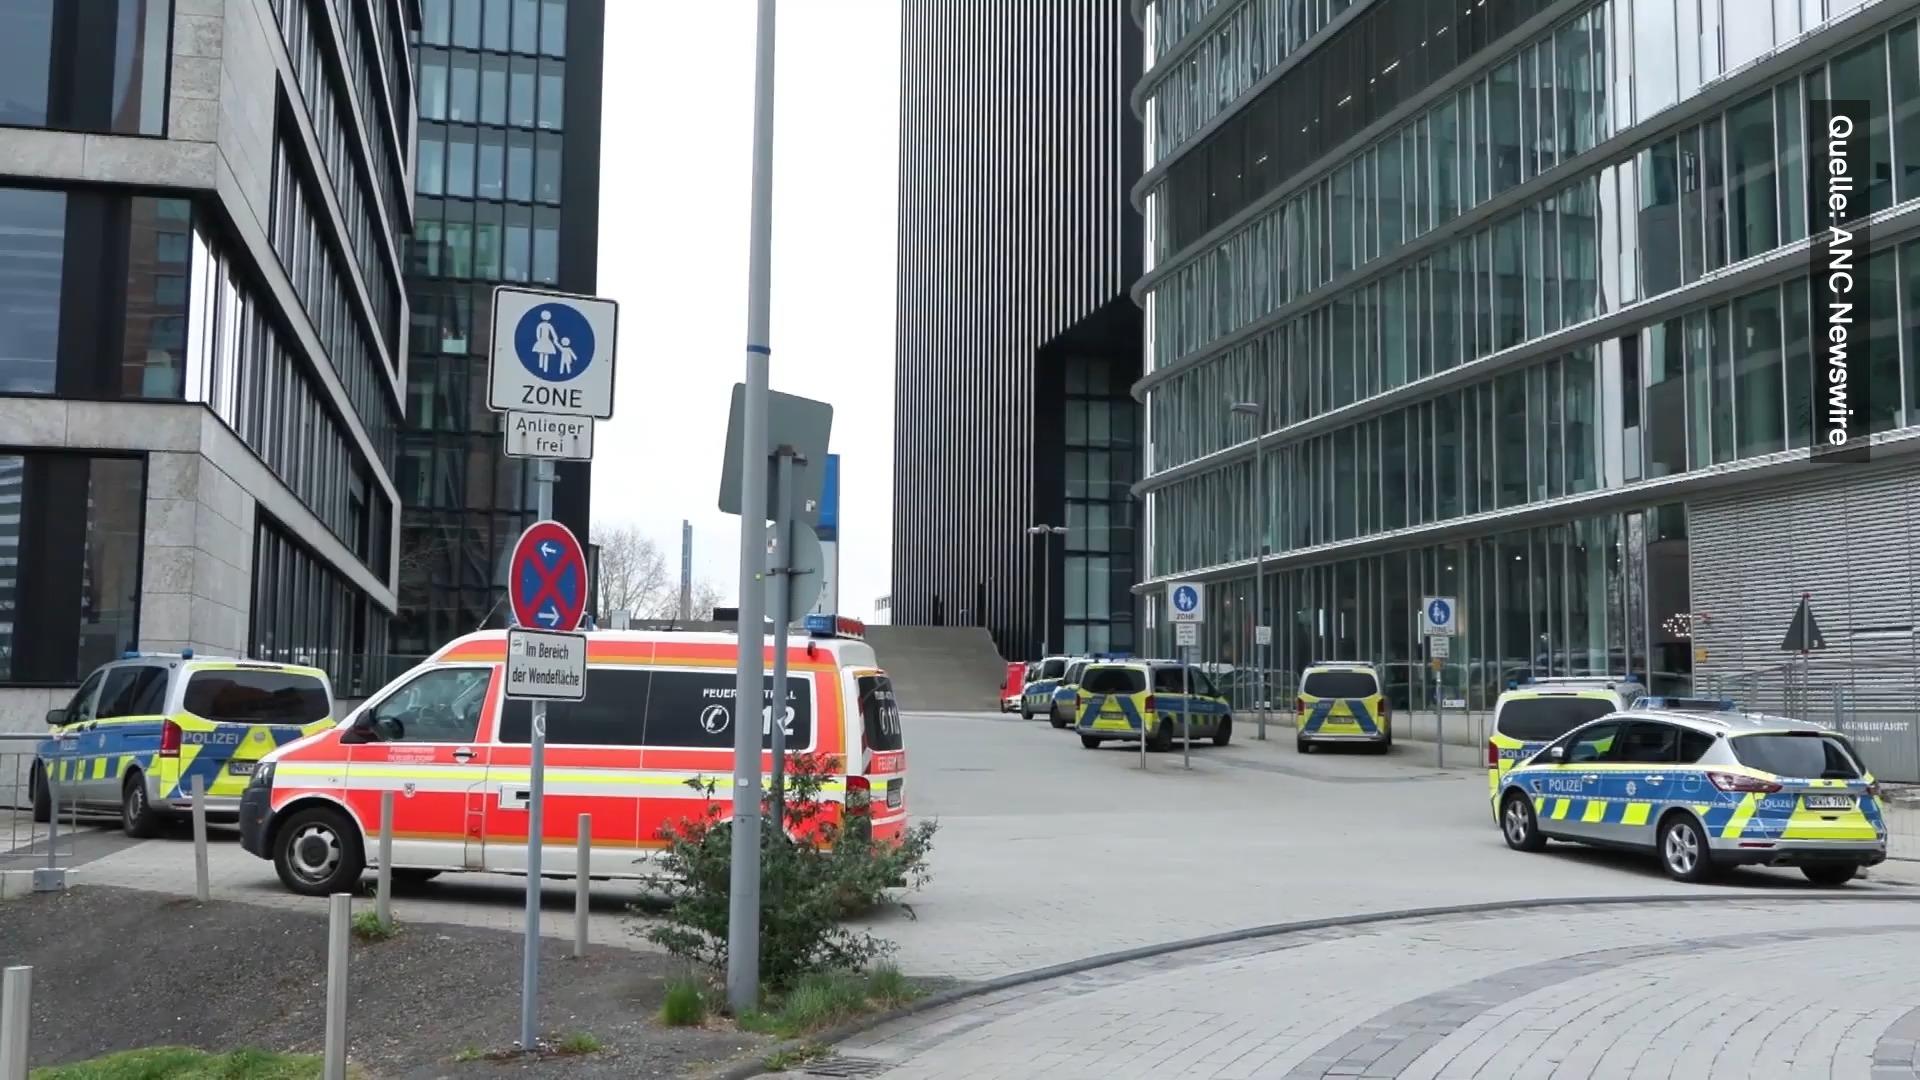 Dos familias tirándose muebles - vestíbulo destruido Düsseldorf: Pelea violenta en un hotel de lujo